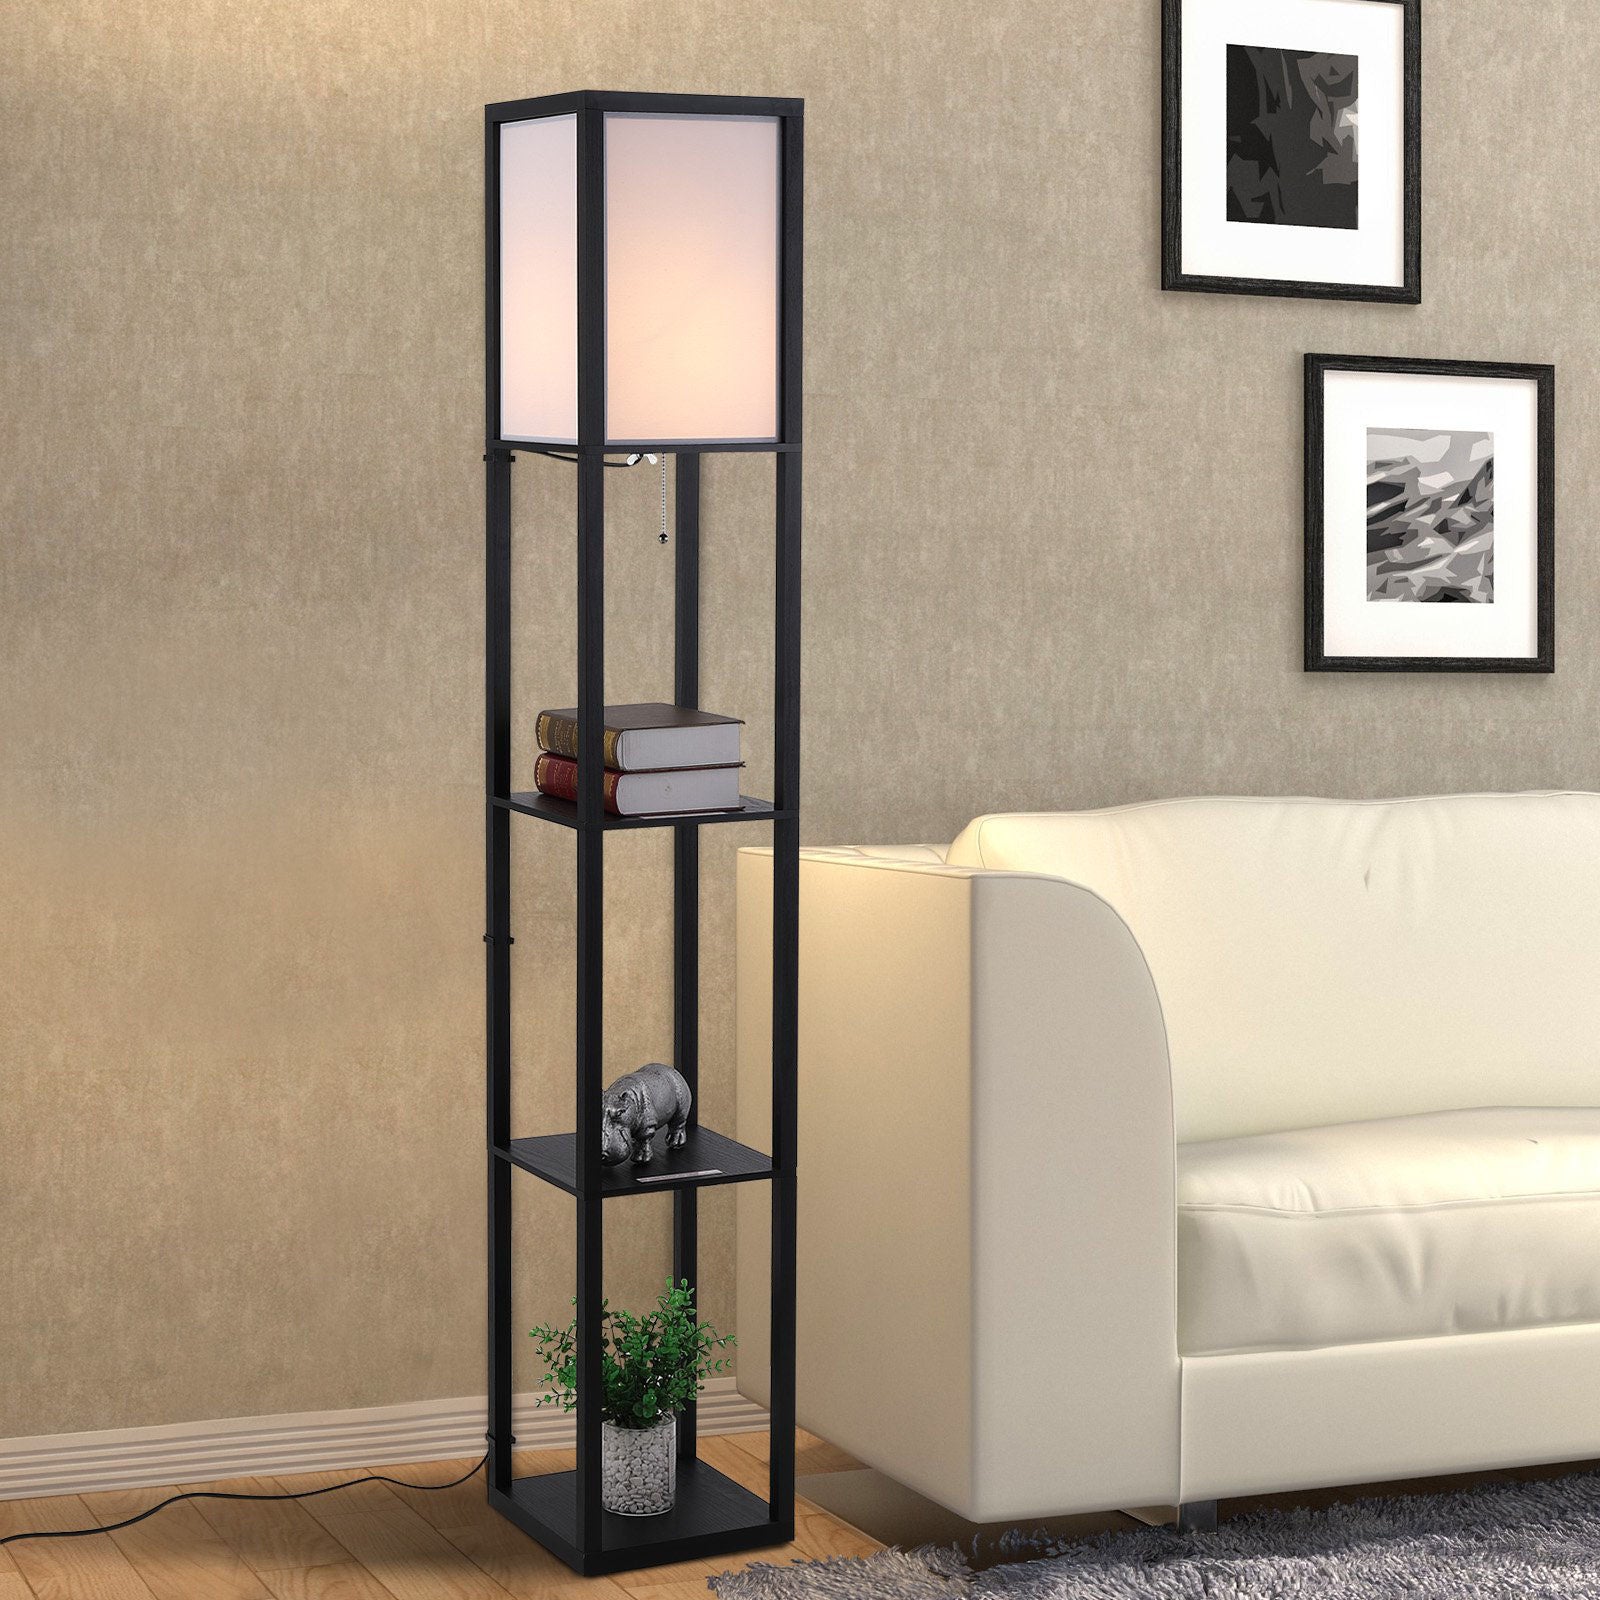 Nancy's Lagarto Vloerlamp met E27 fitting voor woon-/slaapkamer Hout Zwart 26 x 26 x 160 cm(Zonder lamp)